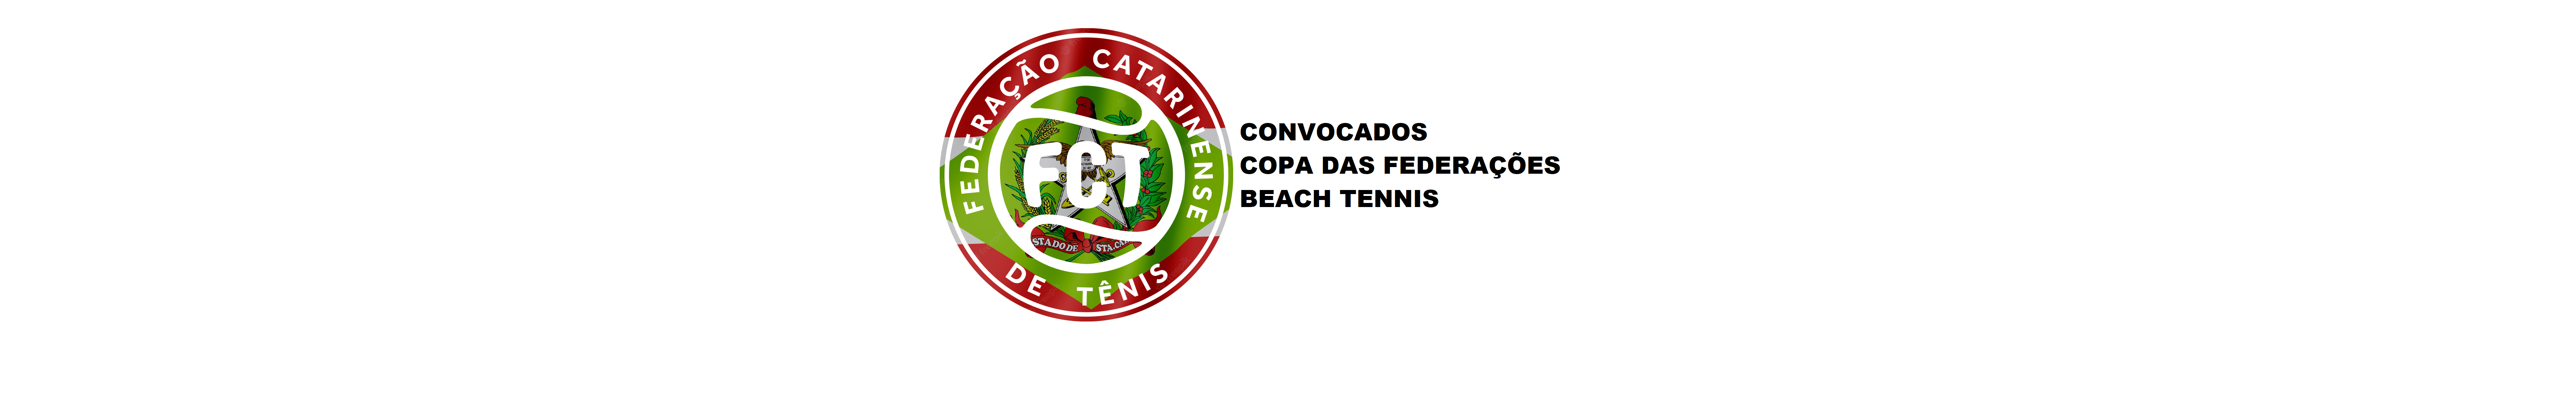 CONVOCADOS COPA DAS FEDERAÇÕES DE BEACH TENNIS 2022